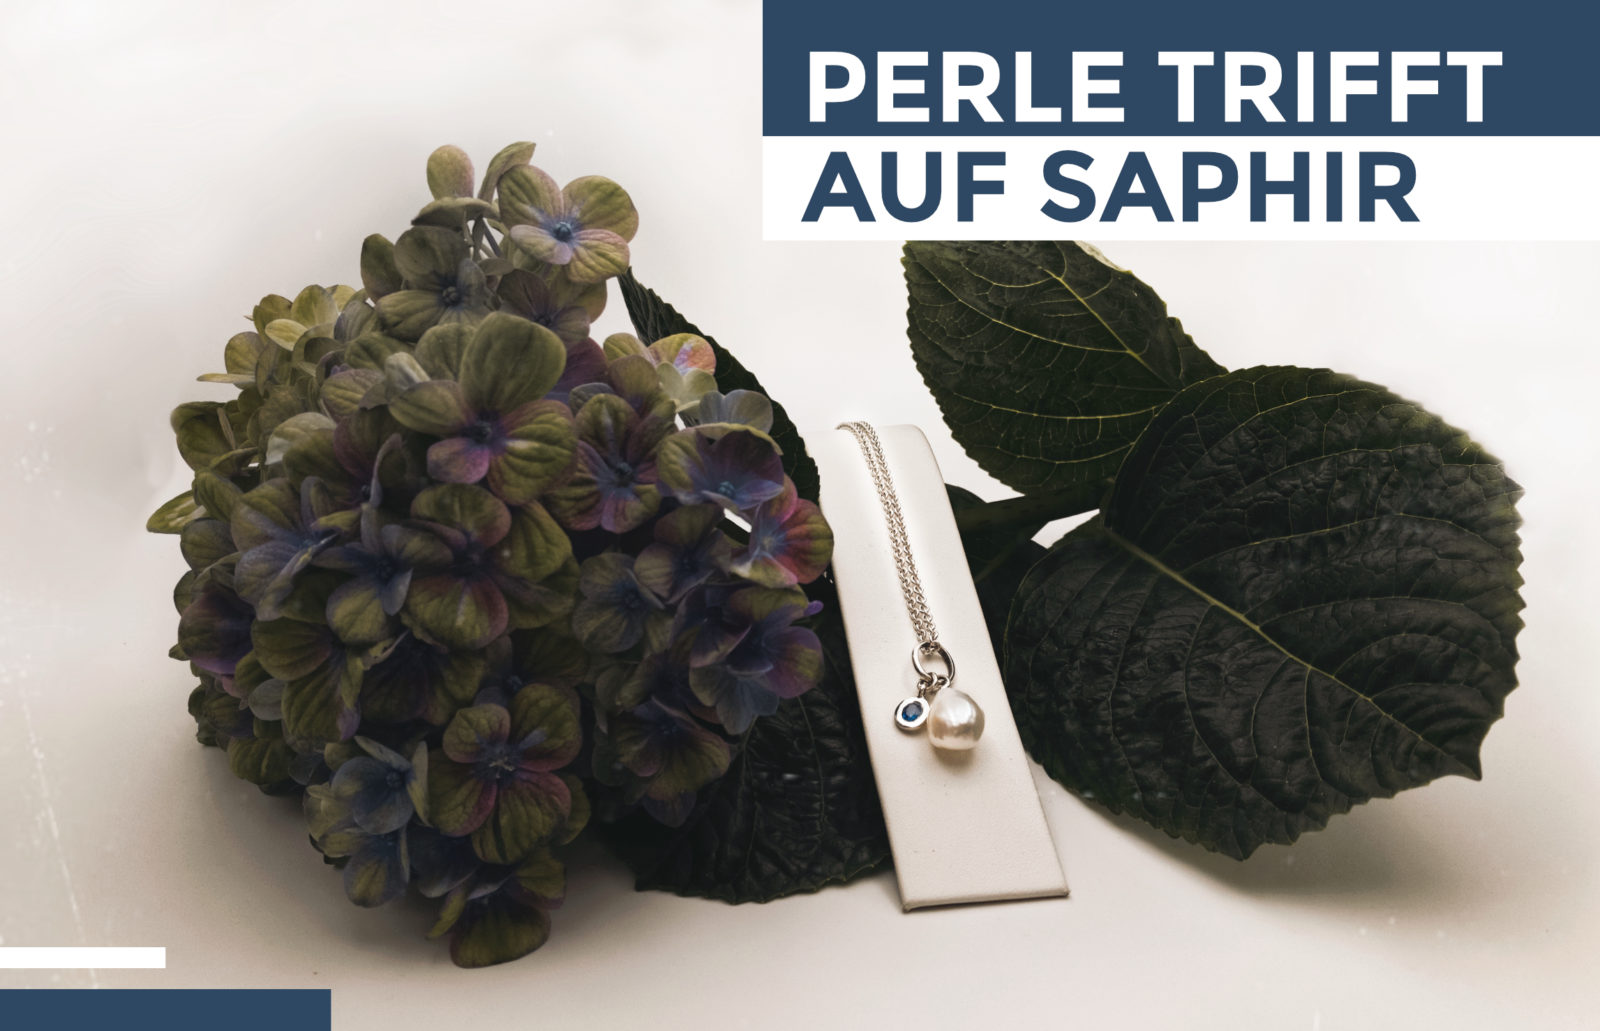 Neuigkeiten: "Perle trifft auf Saphir" - Kette mit Perle und eingefasstem Saphir auf Hortensienblüte dekoriert